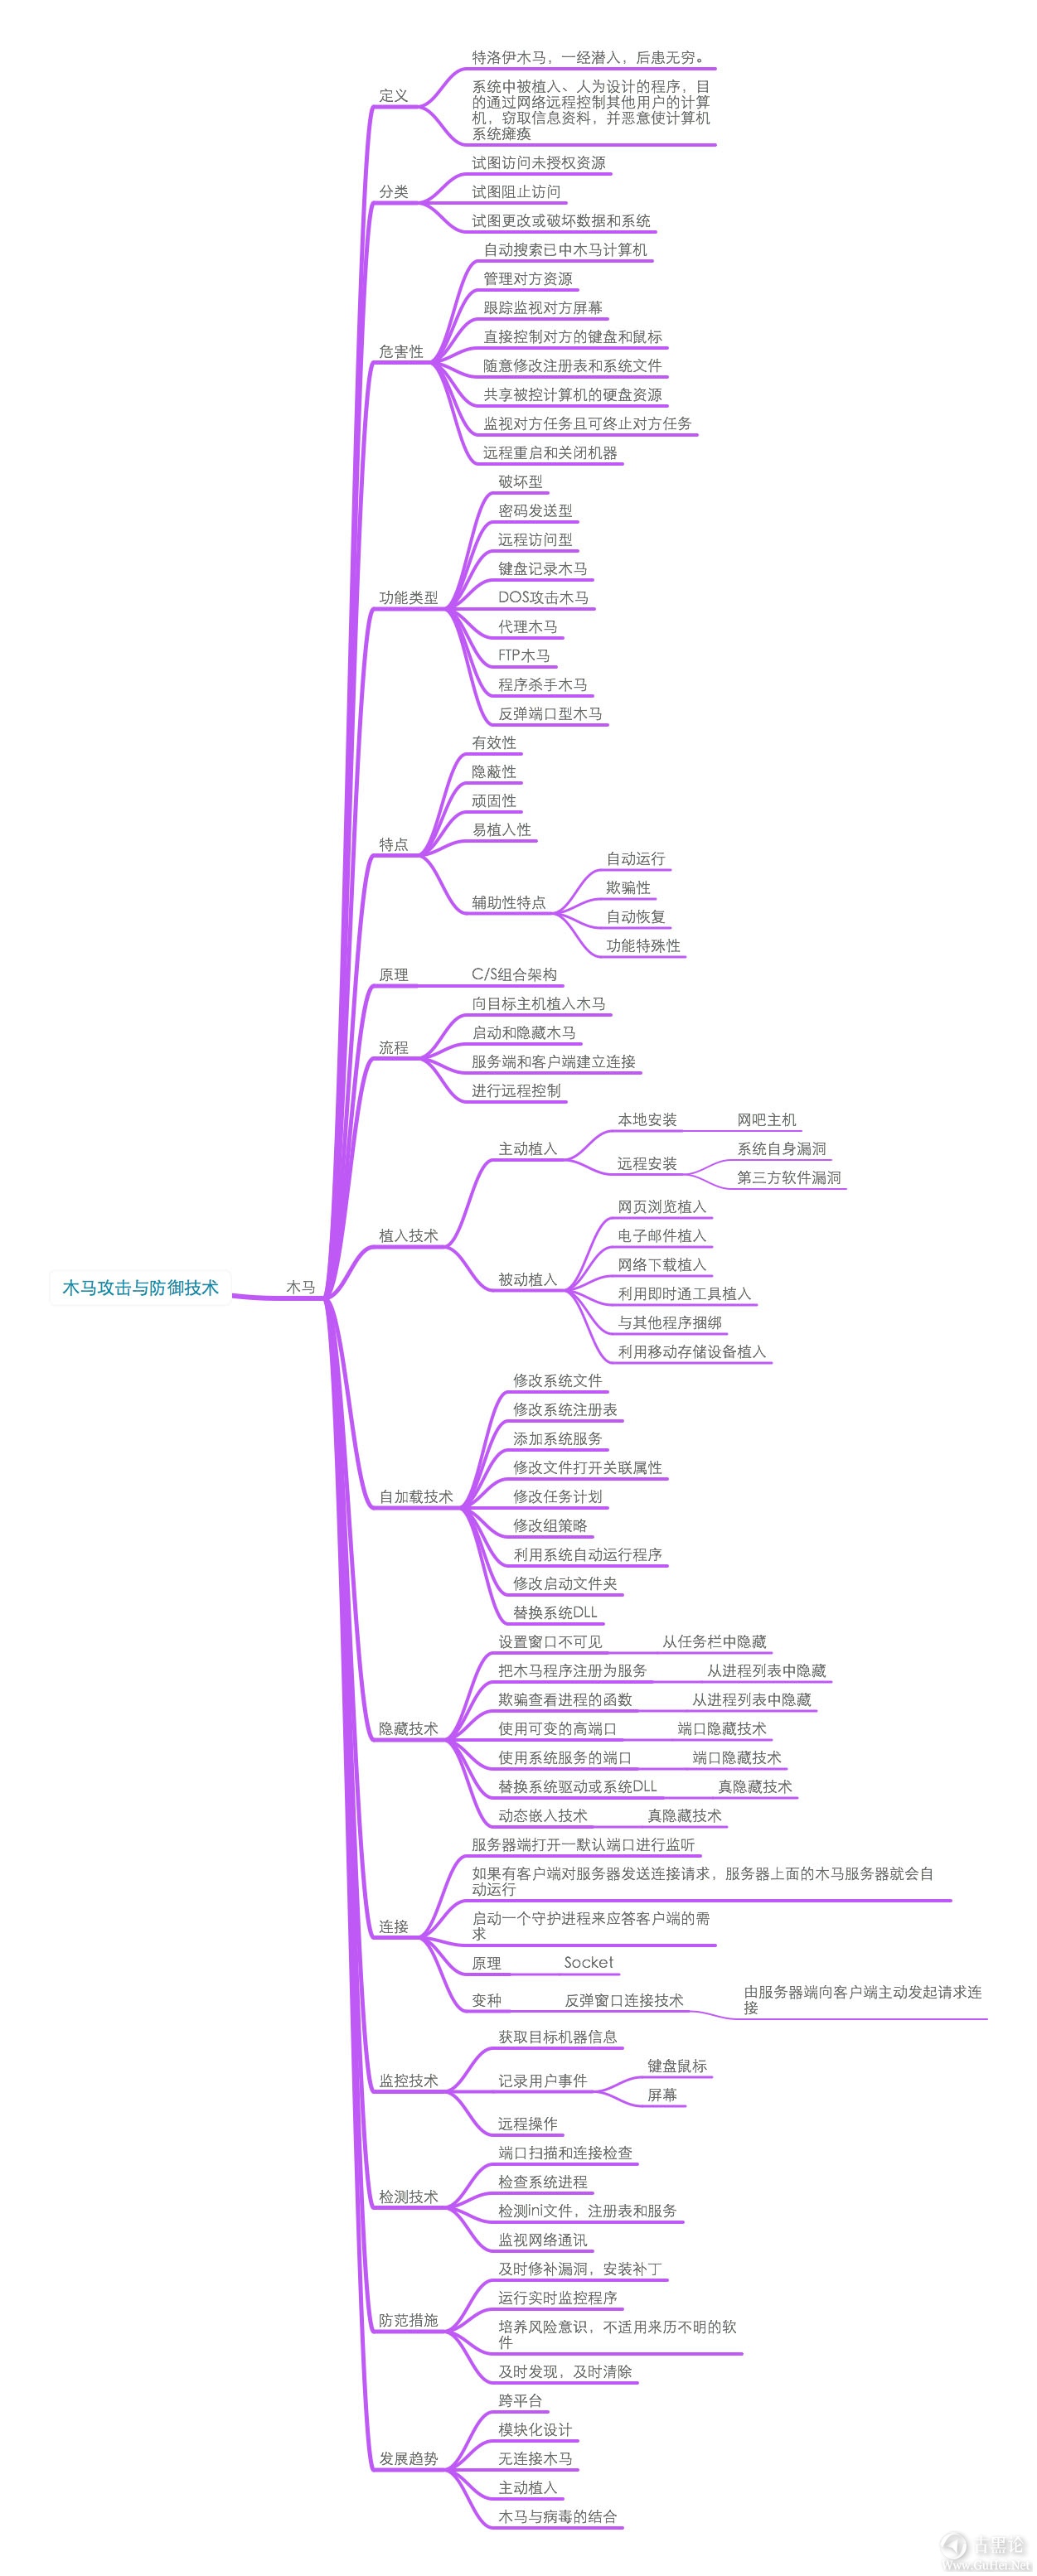 网络安全学习导图（图片约6M） 9-木马攻击.jpg